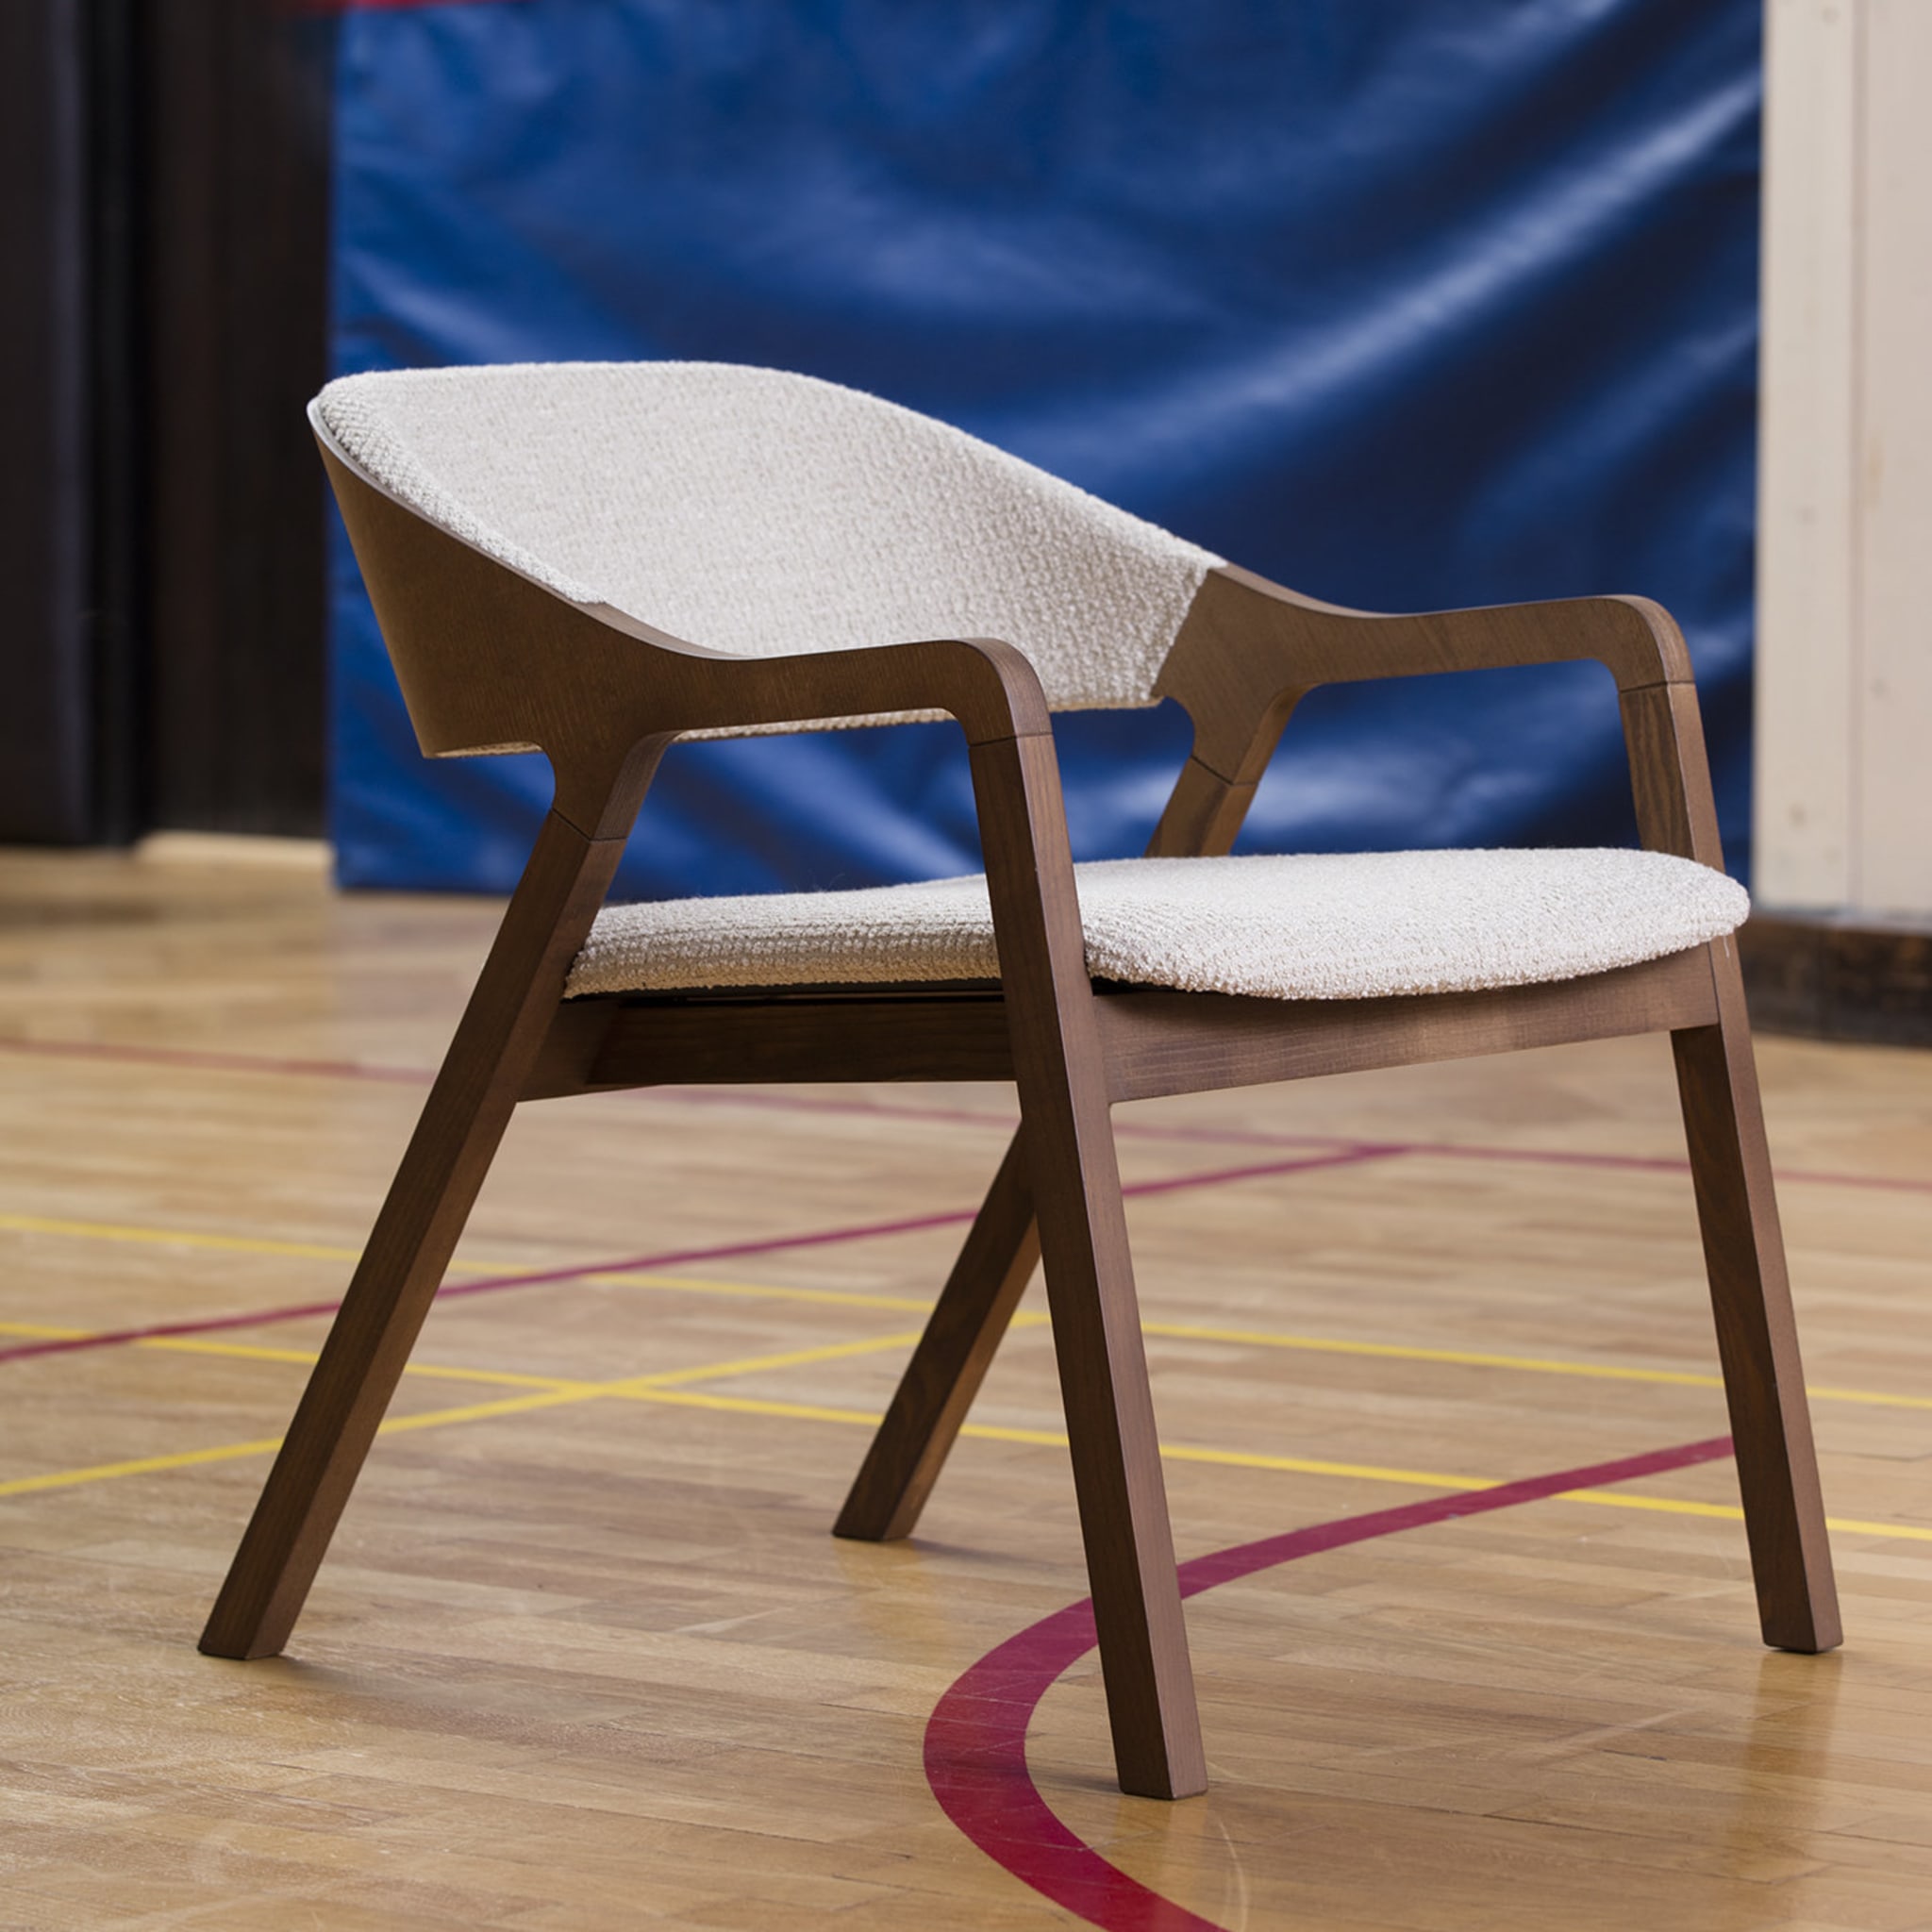 Layer 093 Chair by Michael Geldmacher - Alternative view 1